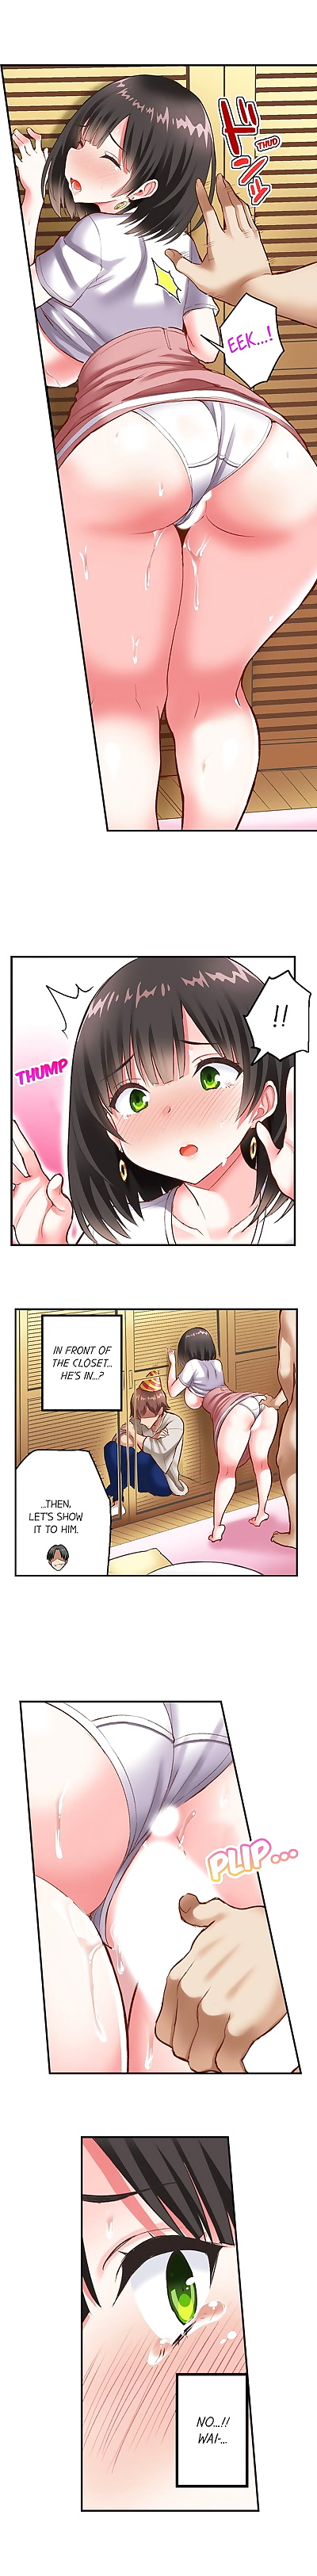 ภาษาอังกฤษ manga เซอร์ไพรส์ ntr ch 1 - 4, big breasts , full color 